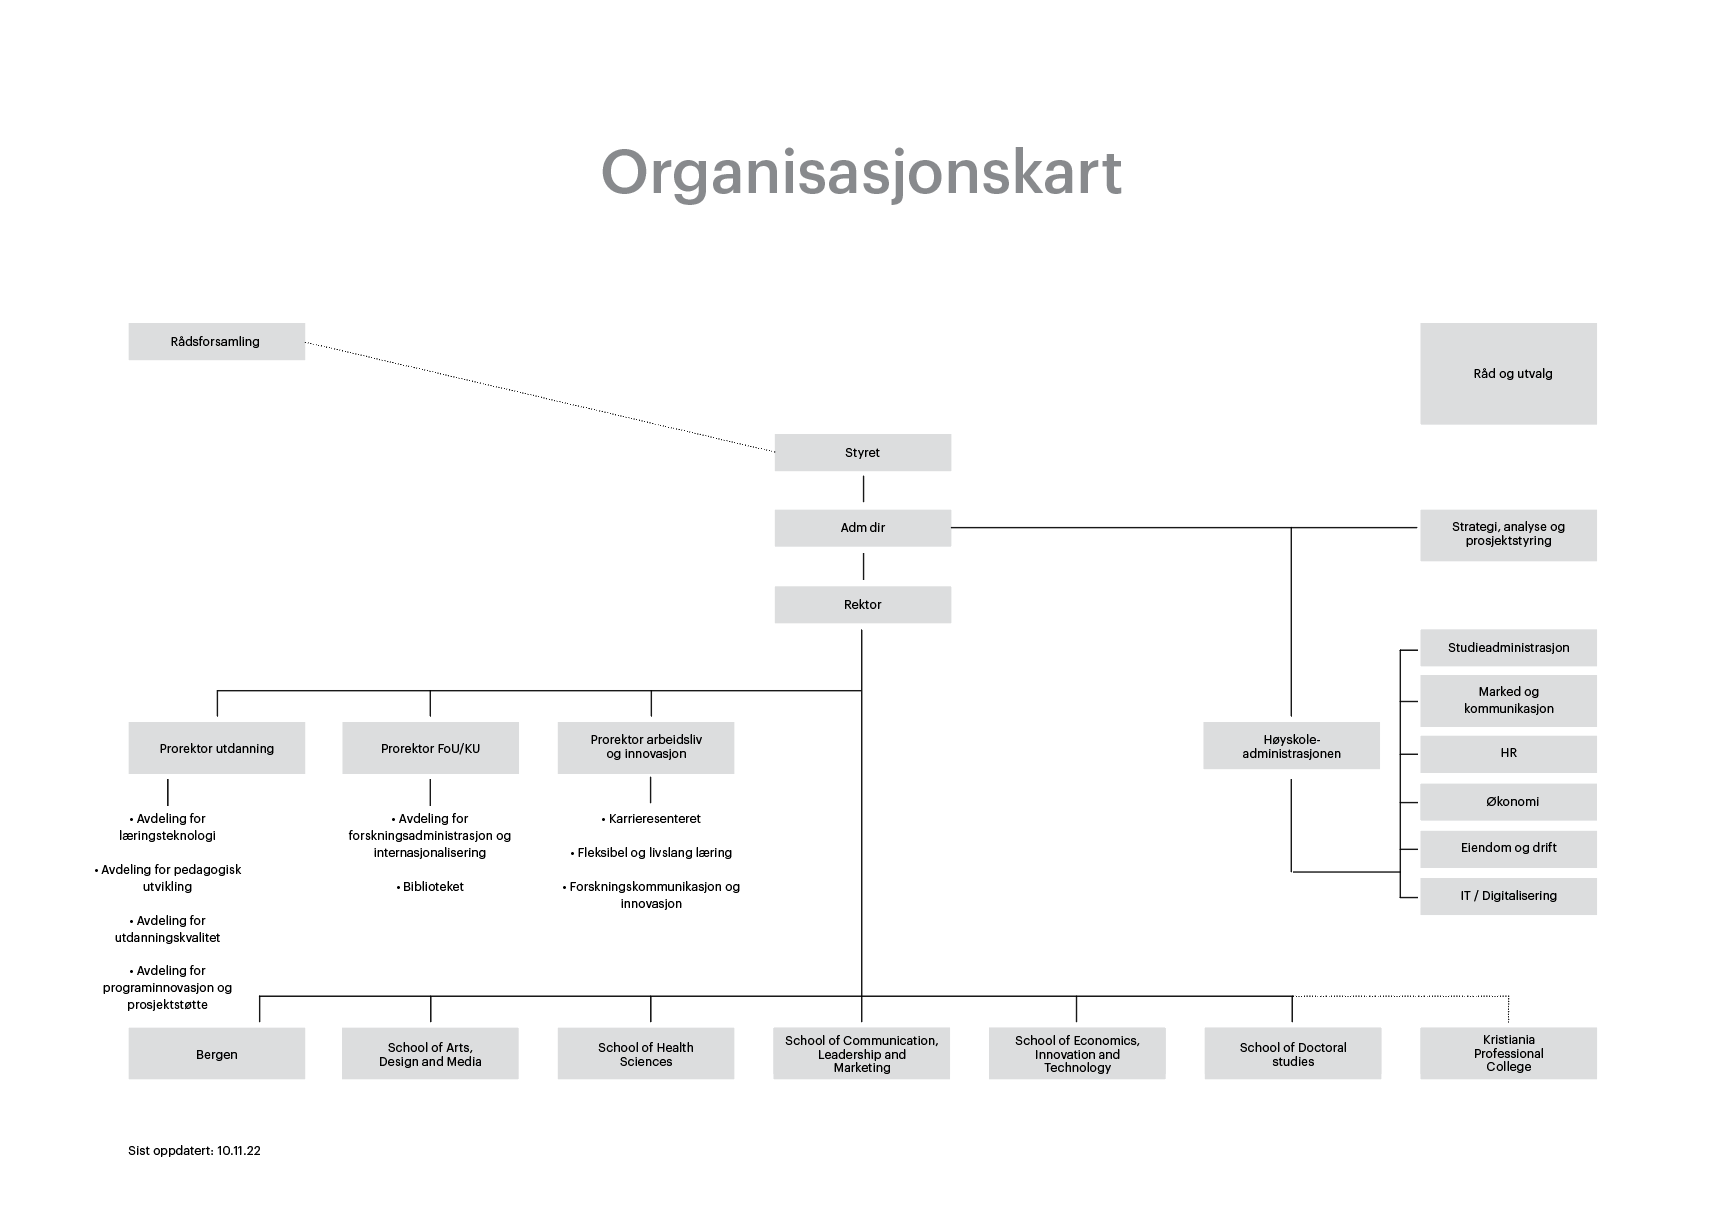 Organisasjonskart for Kristiania